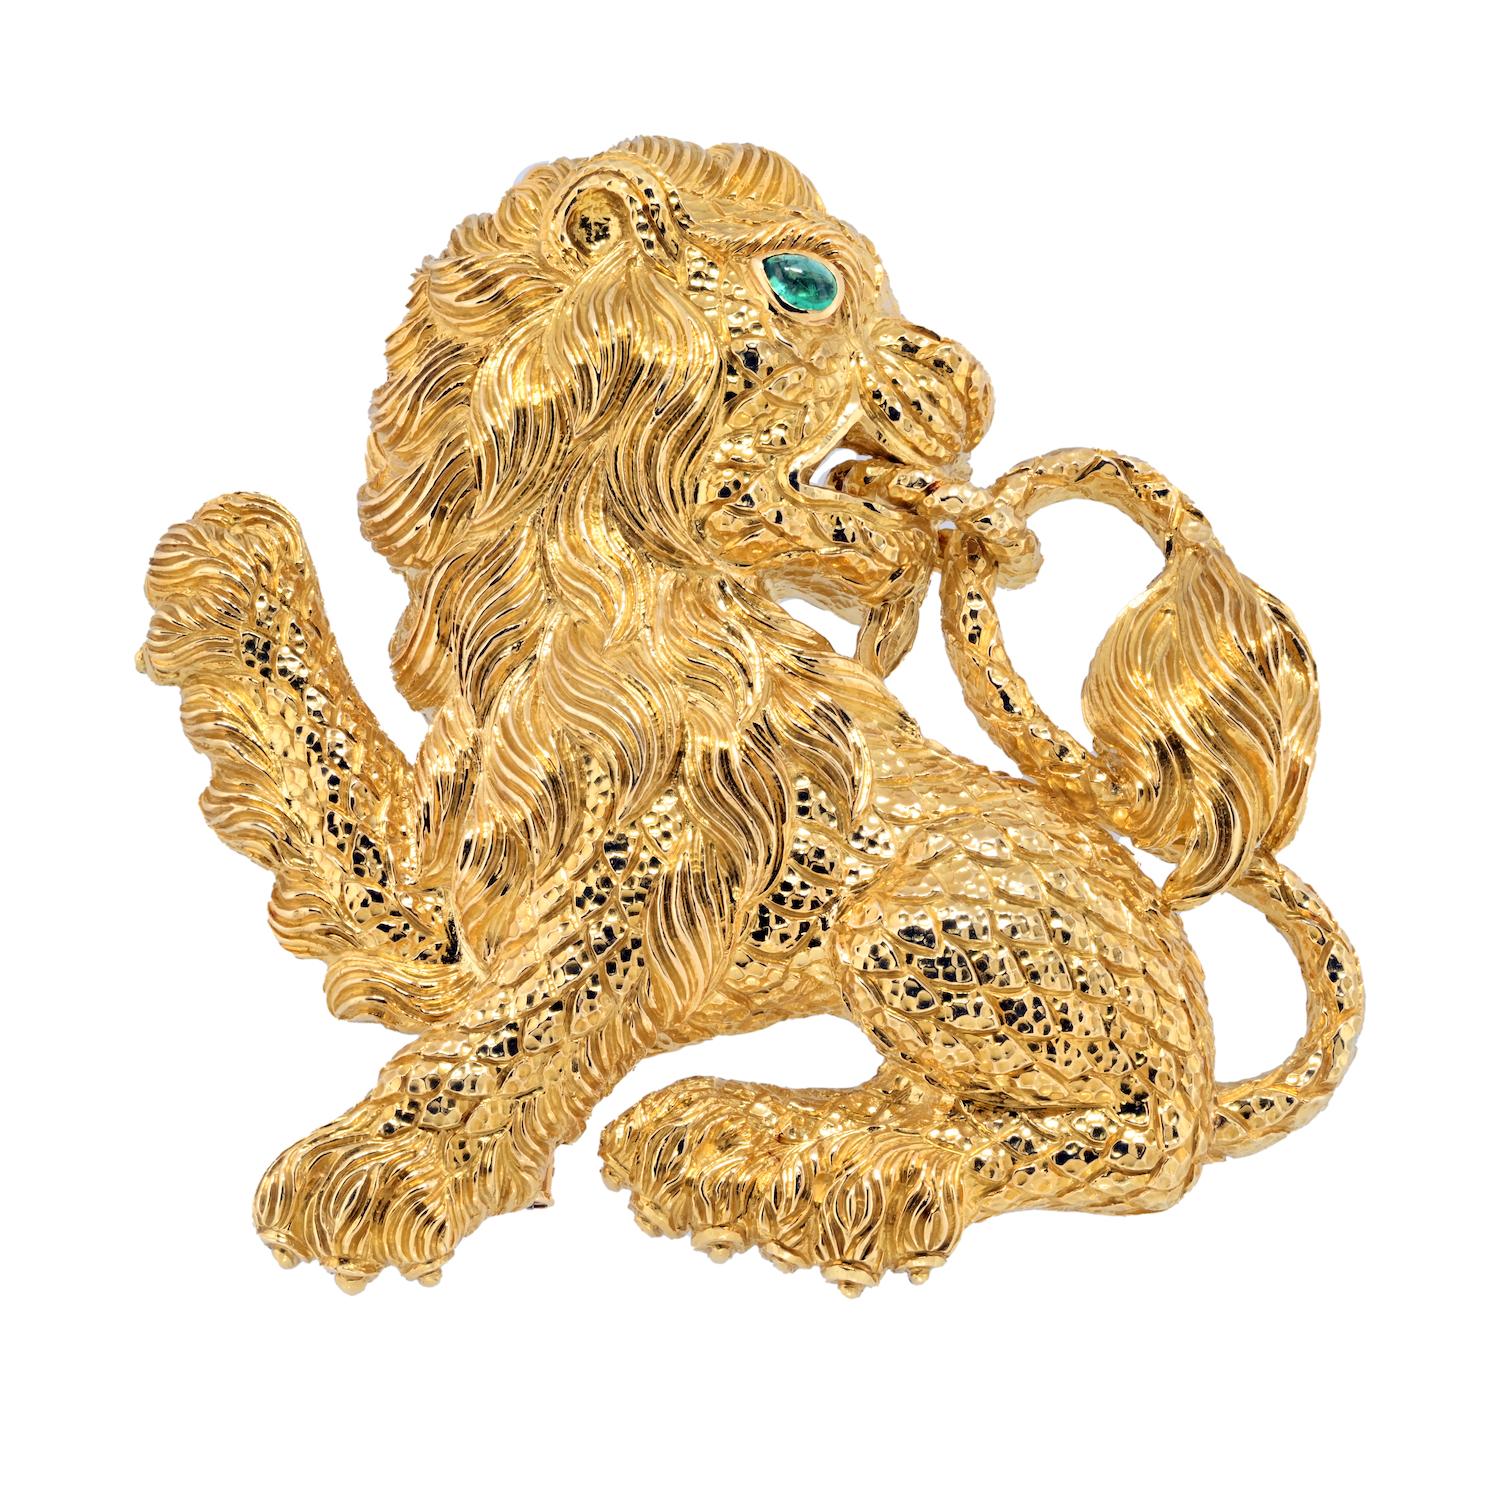 Célébrez l'allure royale de la jungle avec la broche lion en or jaune 18 carats de David Webb, une pièce captivante qui allie harmonieusement sophistication et conception de déclaration. Cette broche exquise témoigne du style emblématique de David